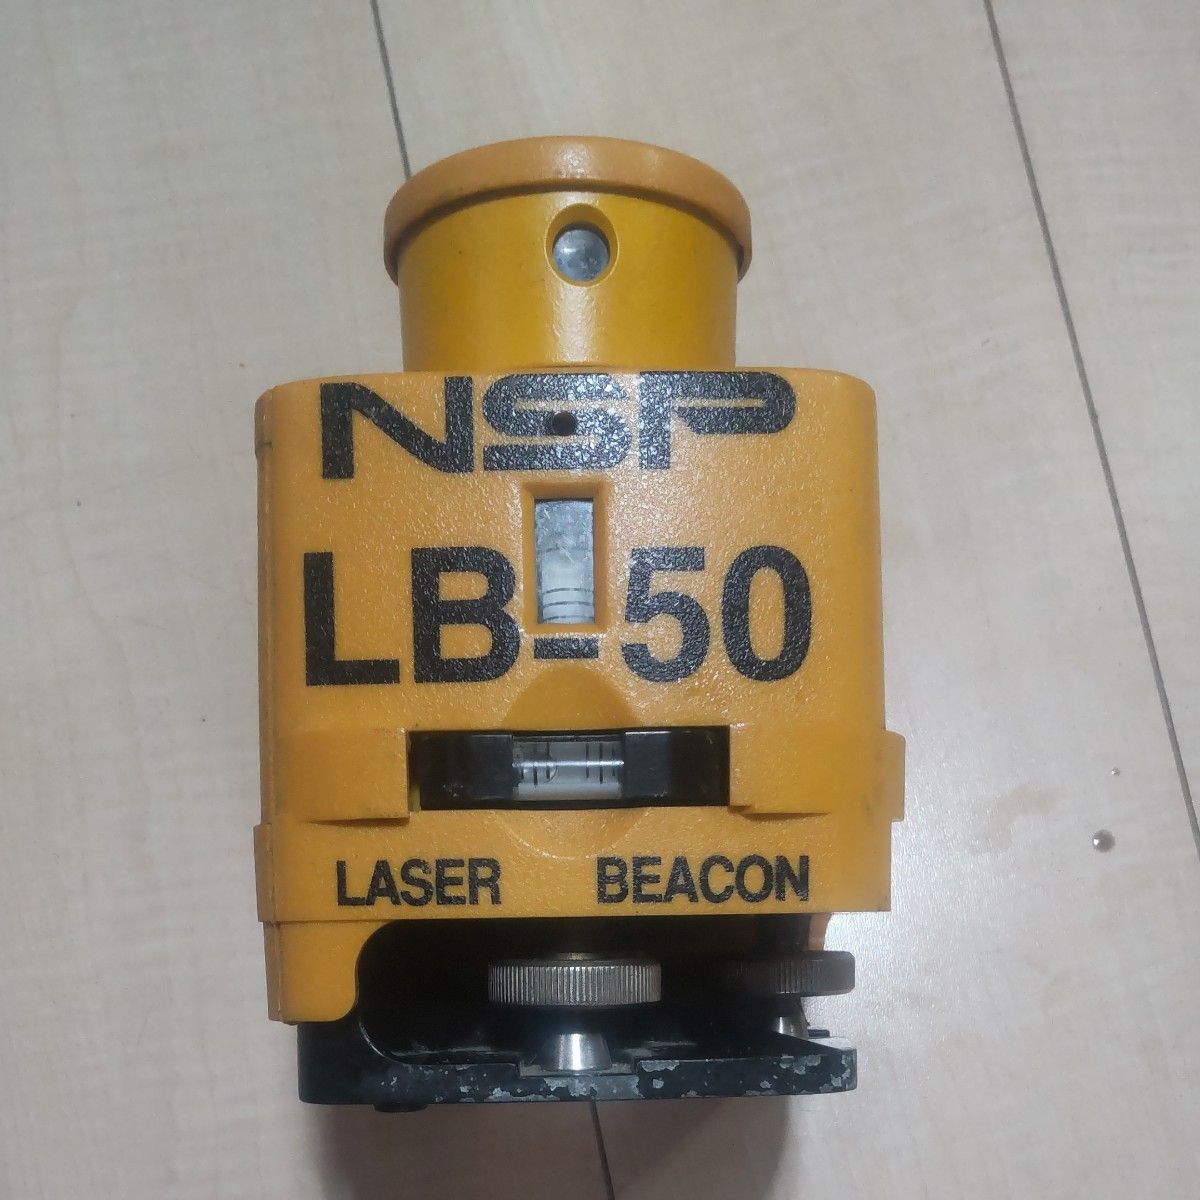 墨出し器 NSP-LB50　レーザーレベル**ジャンク品**